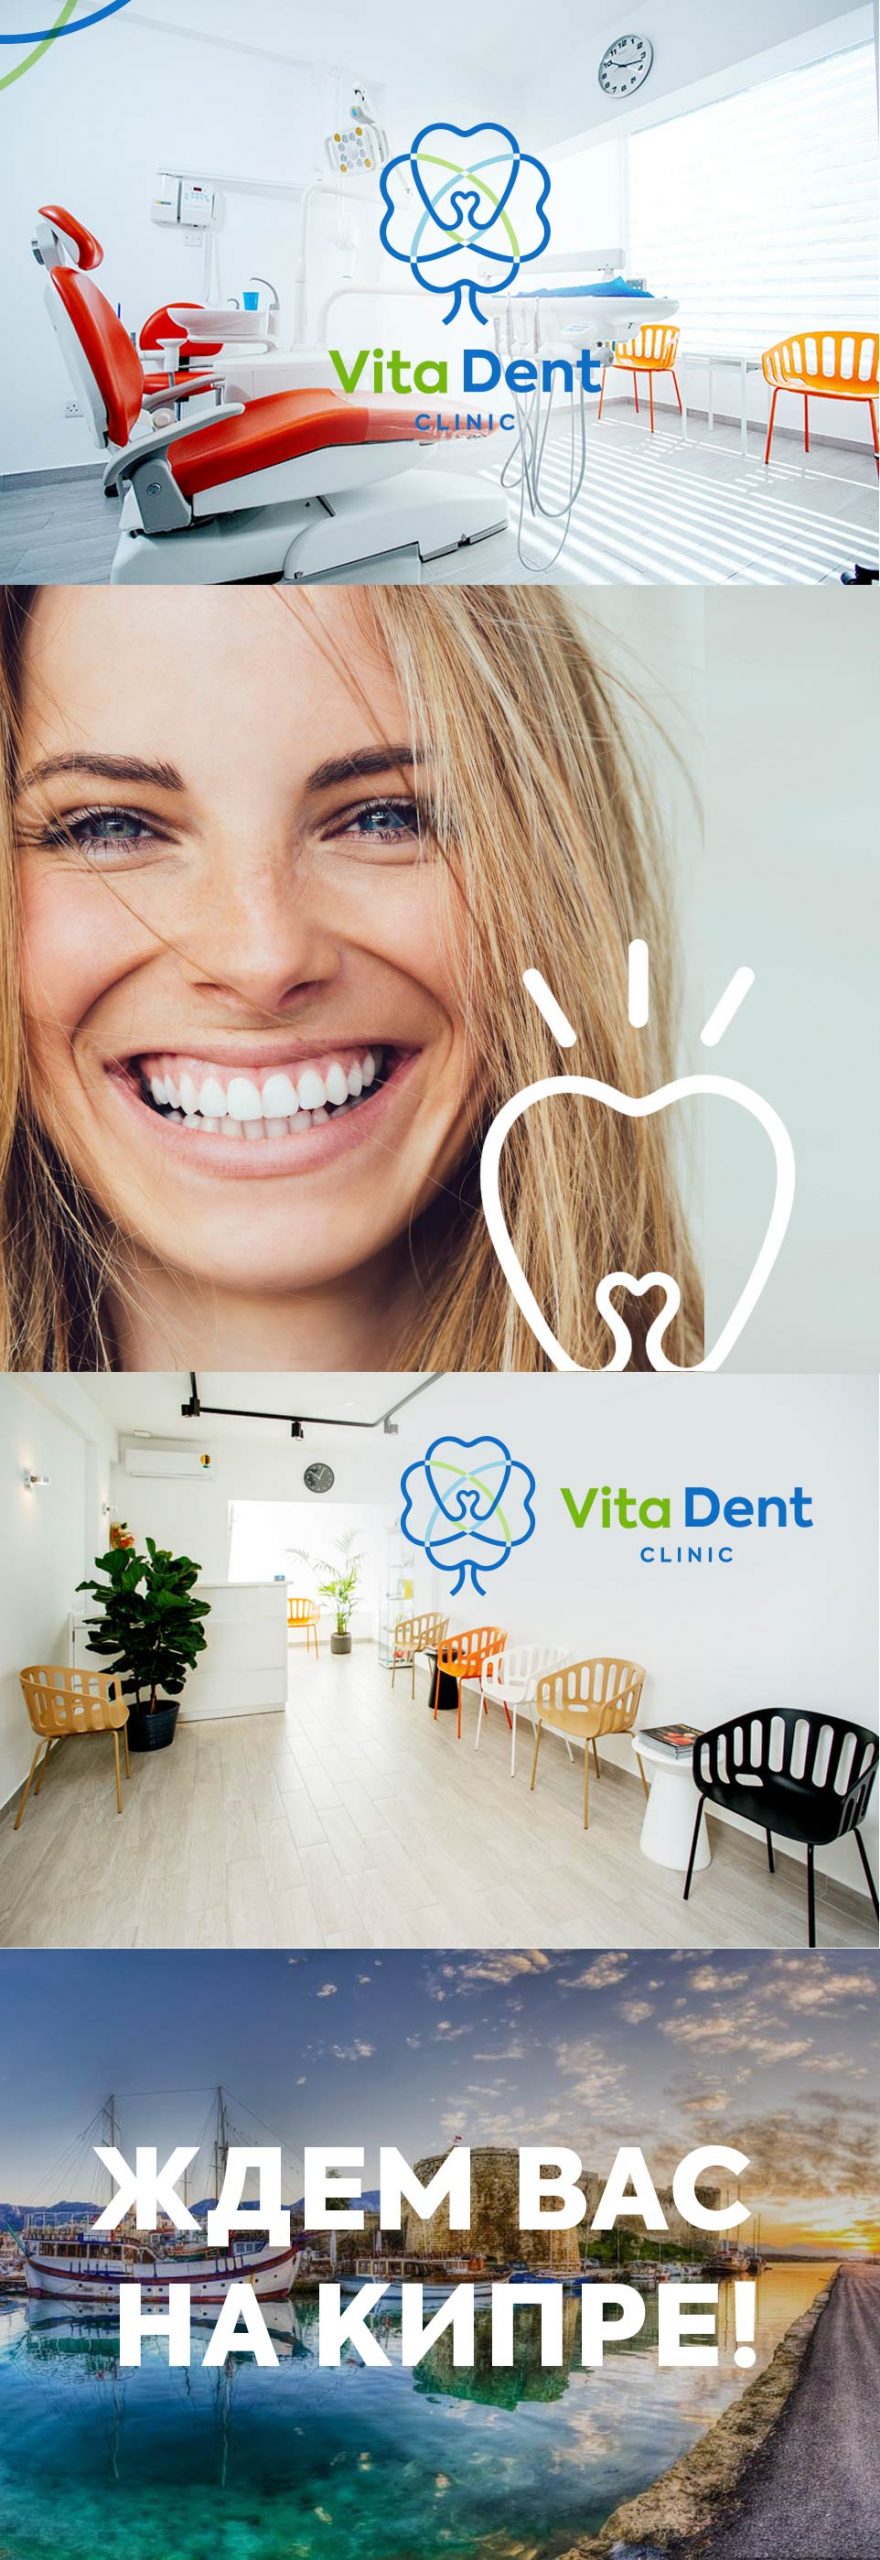 Редизайн логотипа для стоматологии